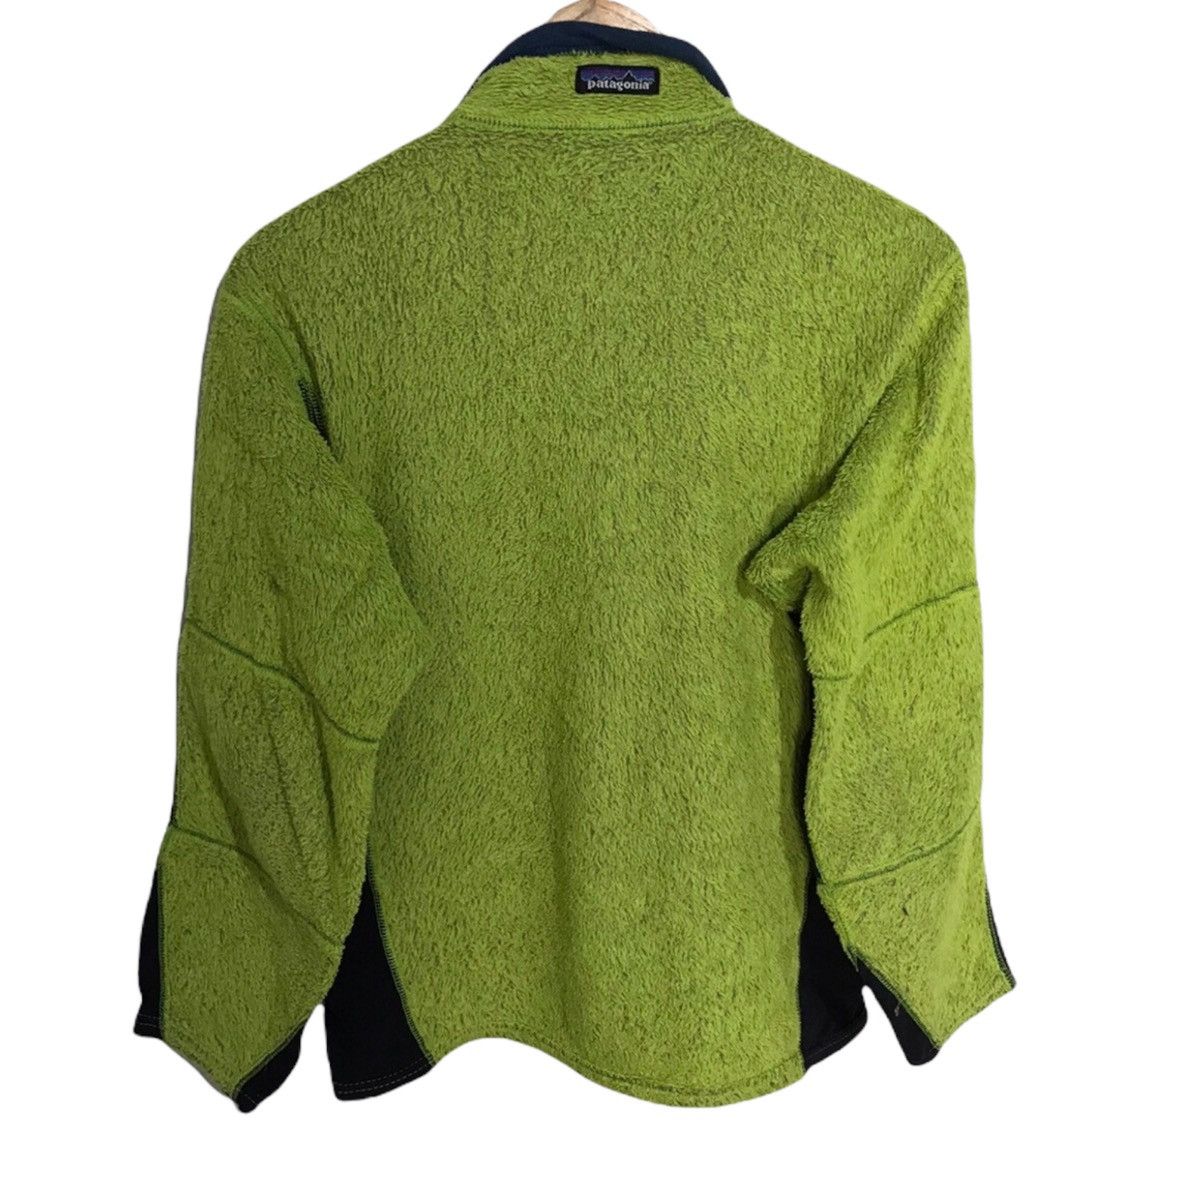 Patagonia green polartec fleece made in usa - 2